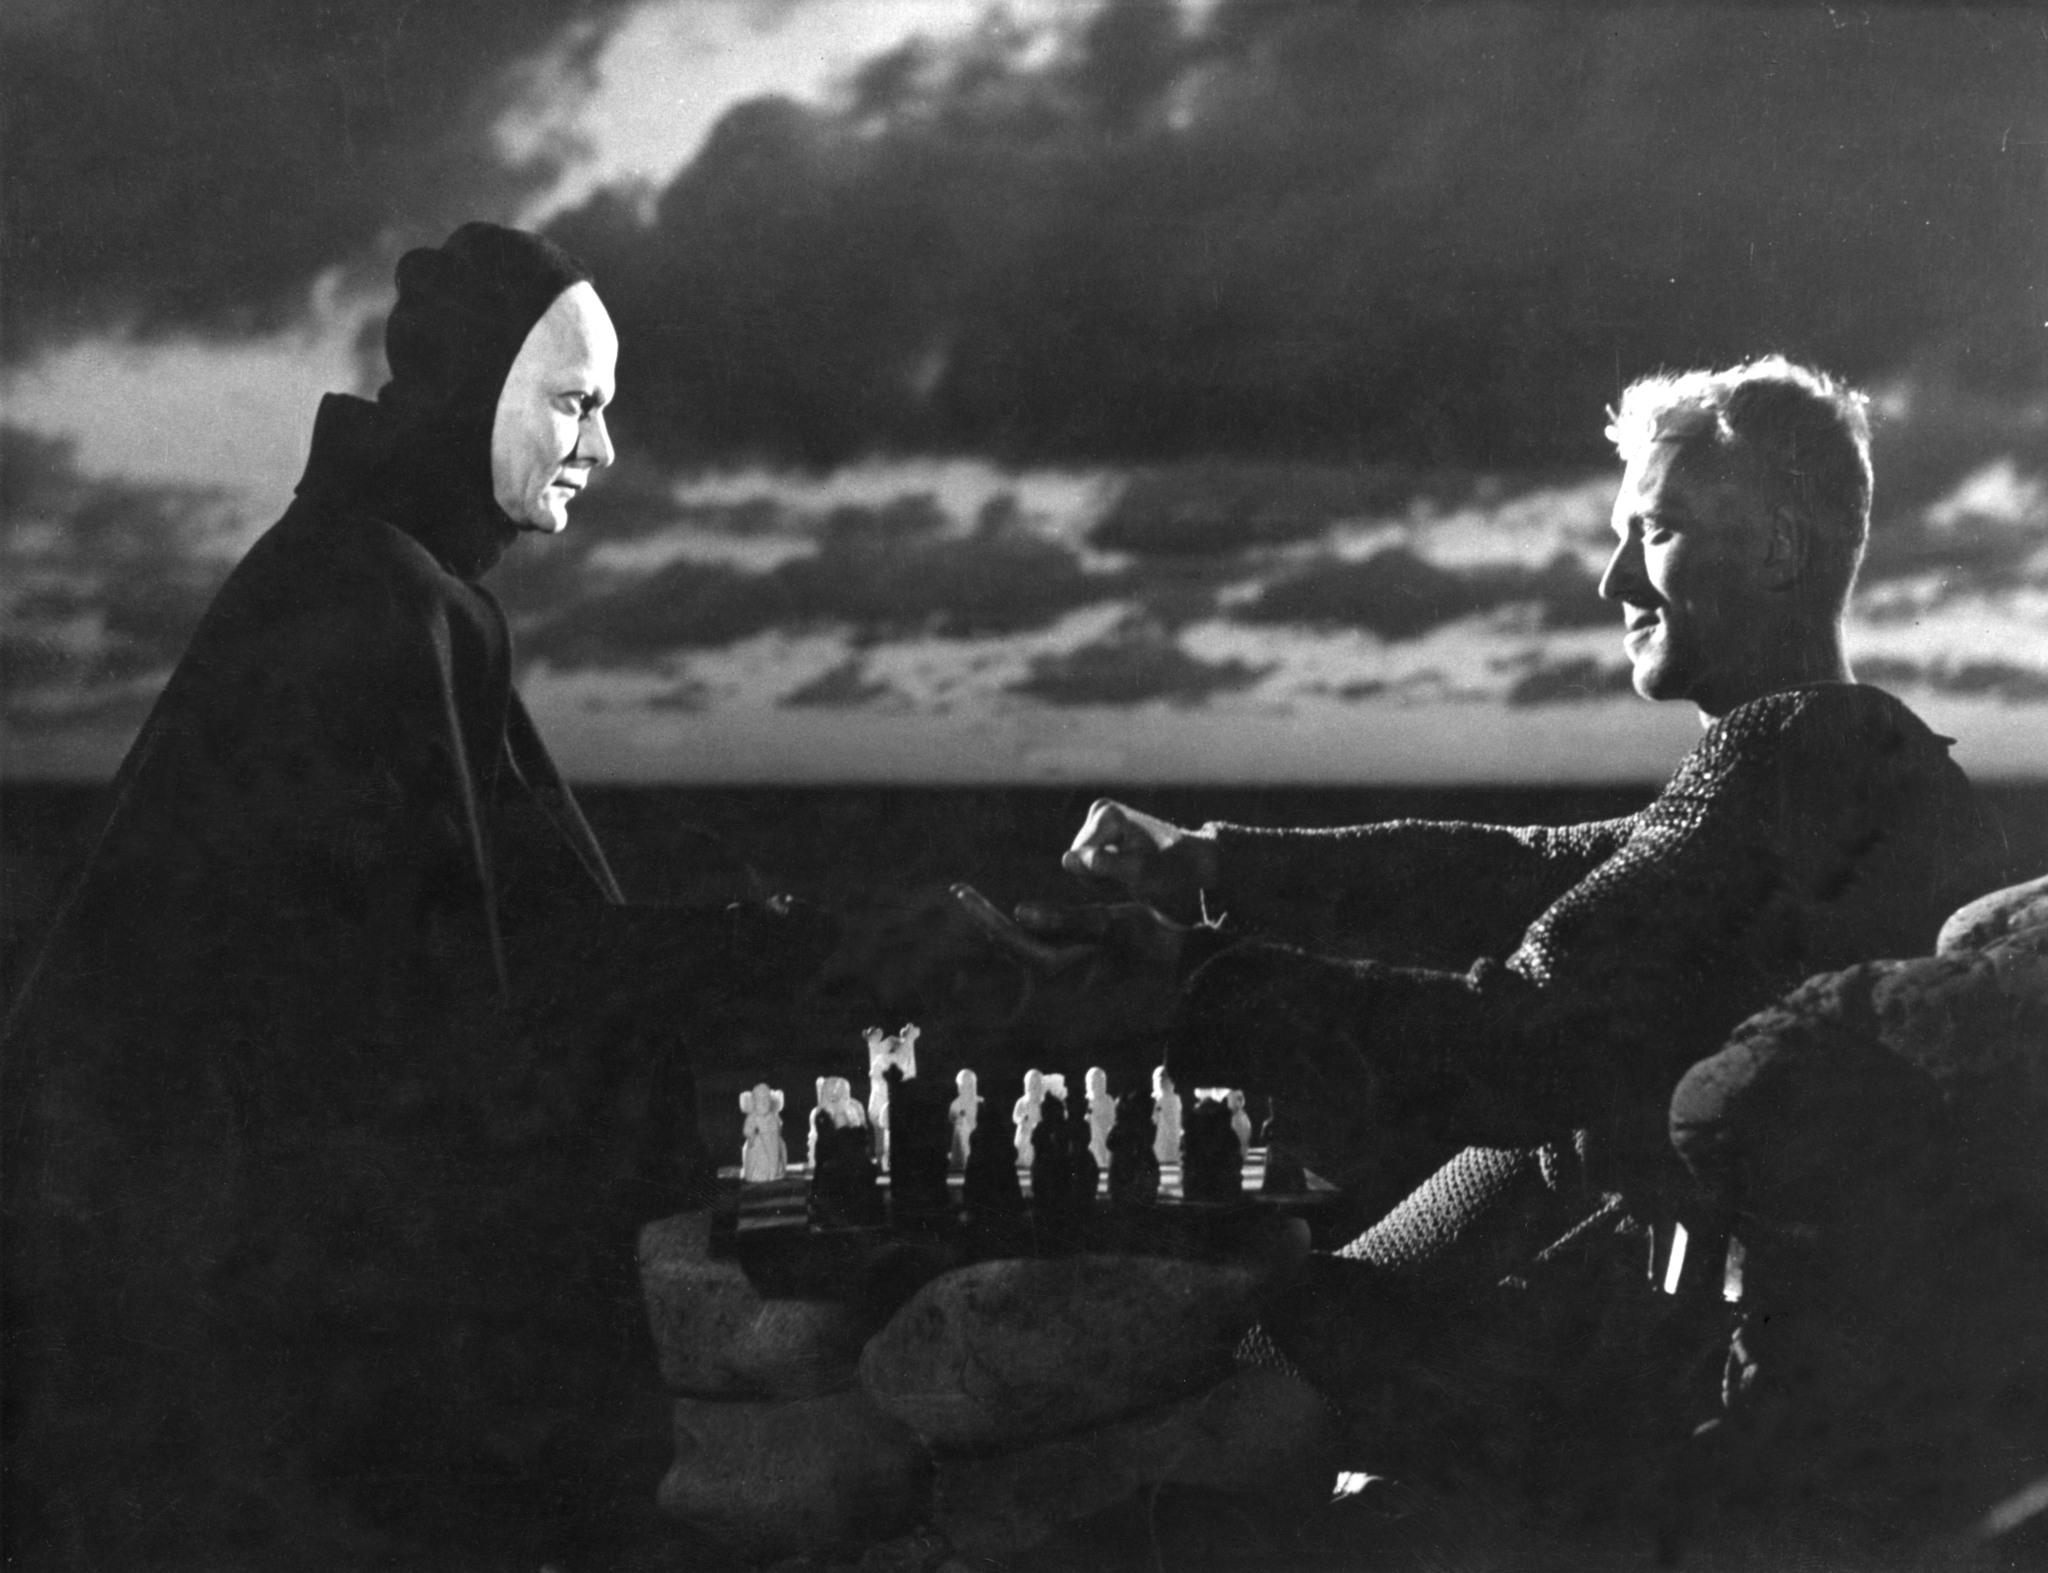 الممثل ماكس فون سيدو مع الممثل بينغت إكيروت هم يلعبان الشطرنج على شط أحد البحيرات.